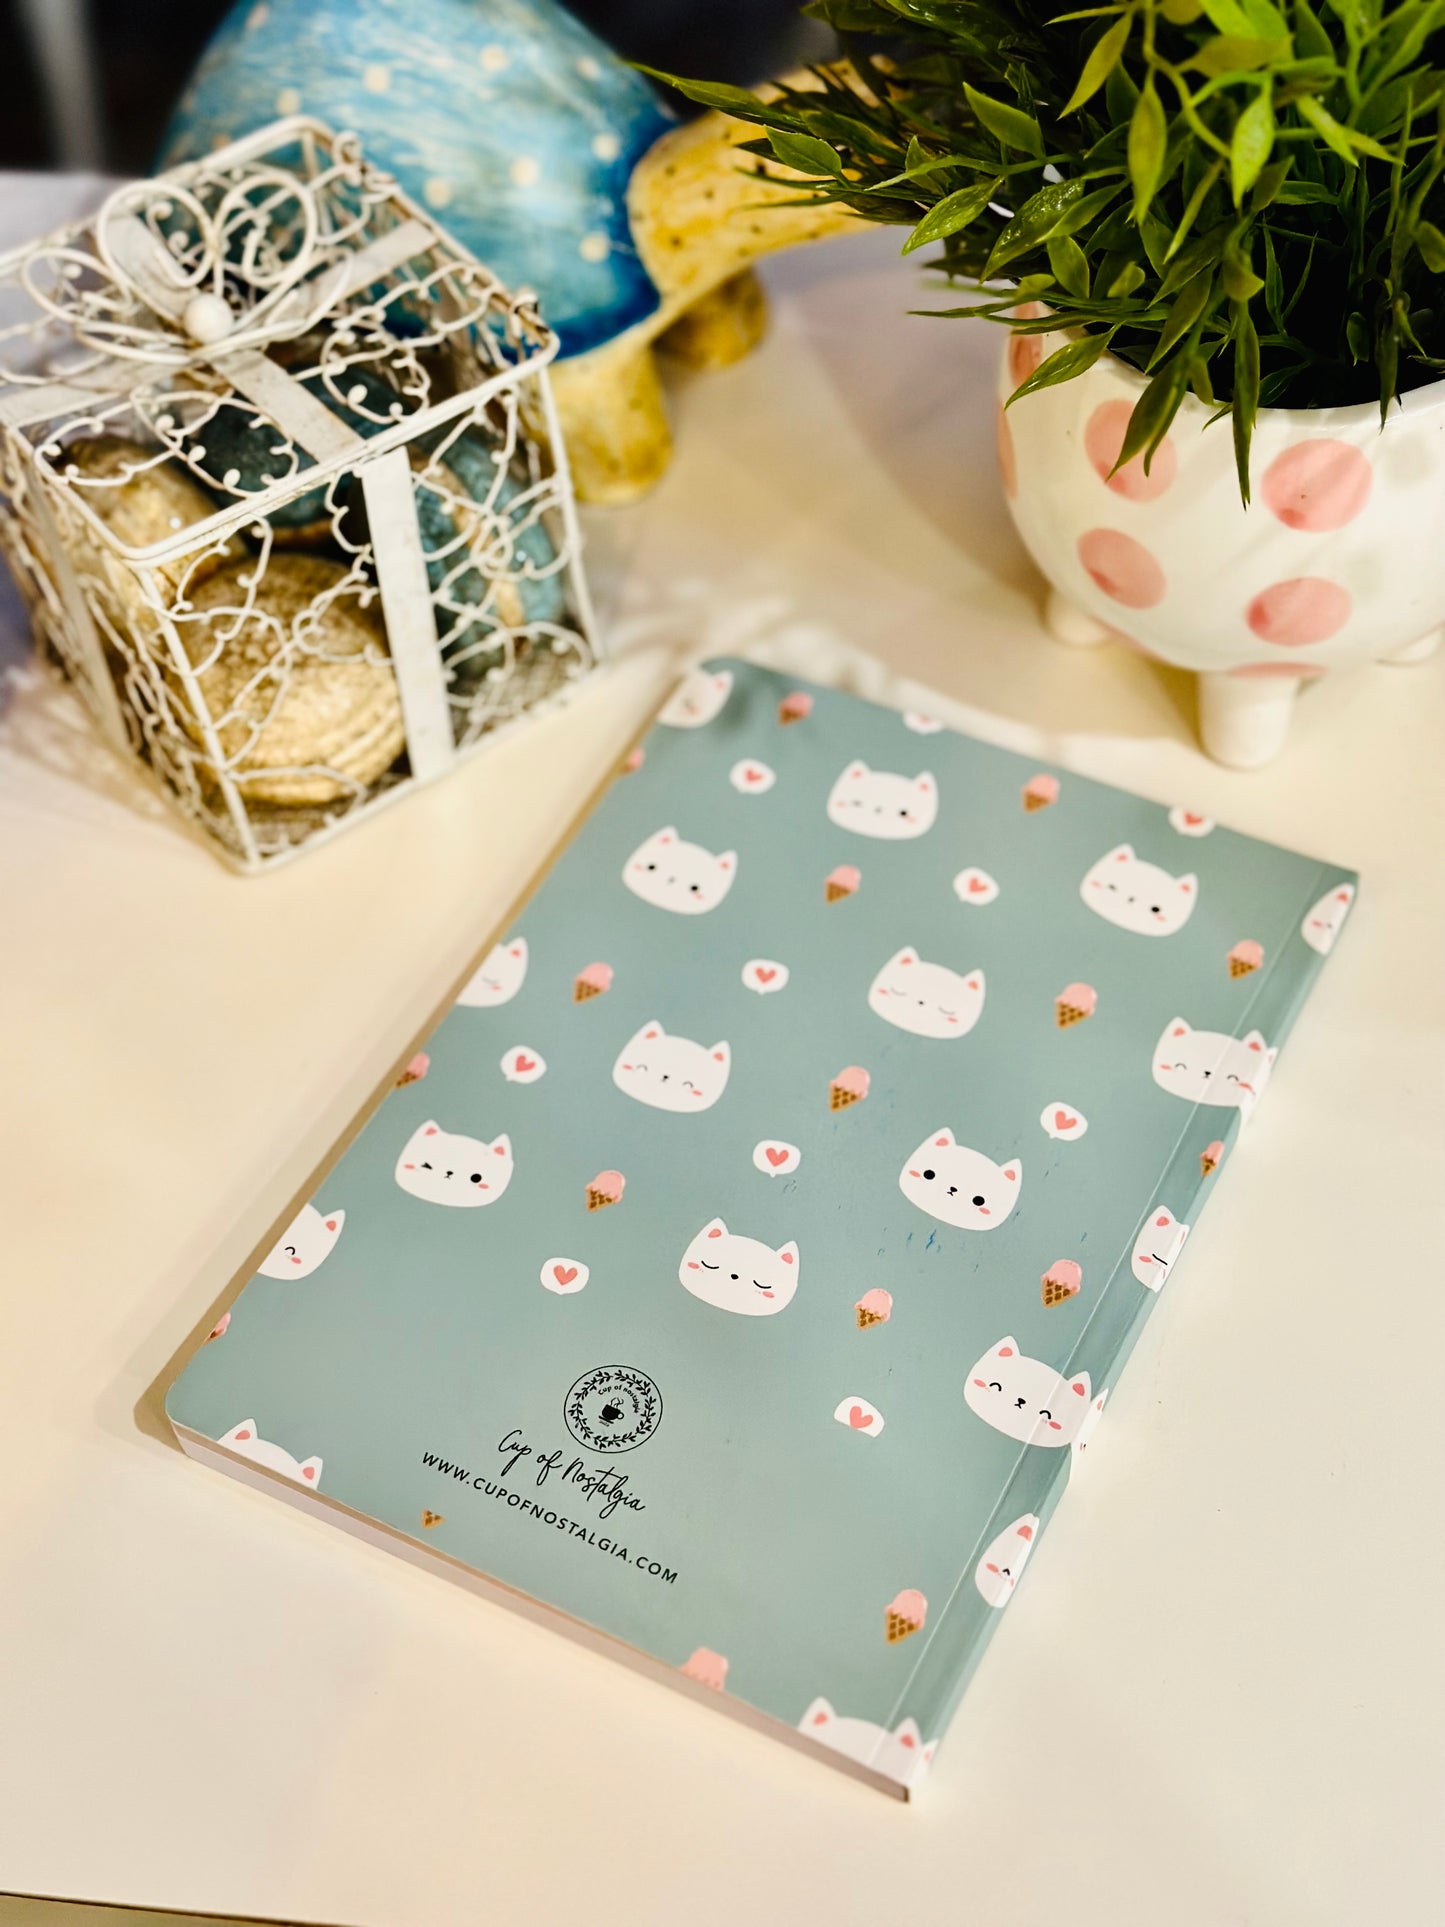 Cutie Pies | notebook